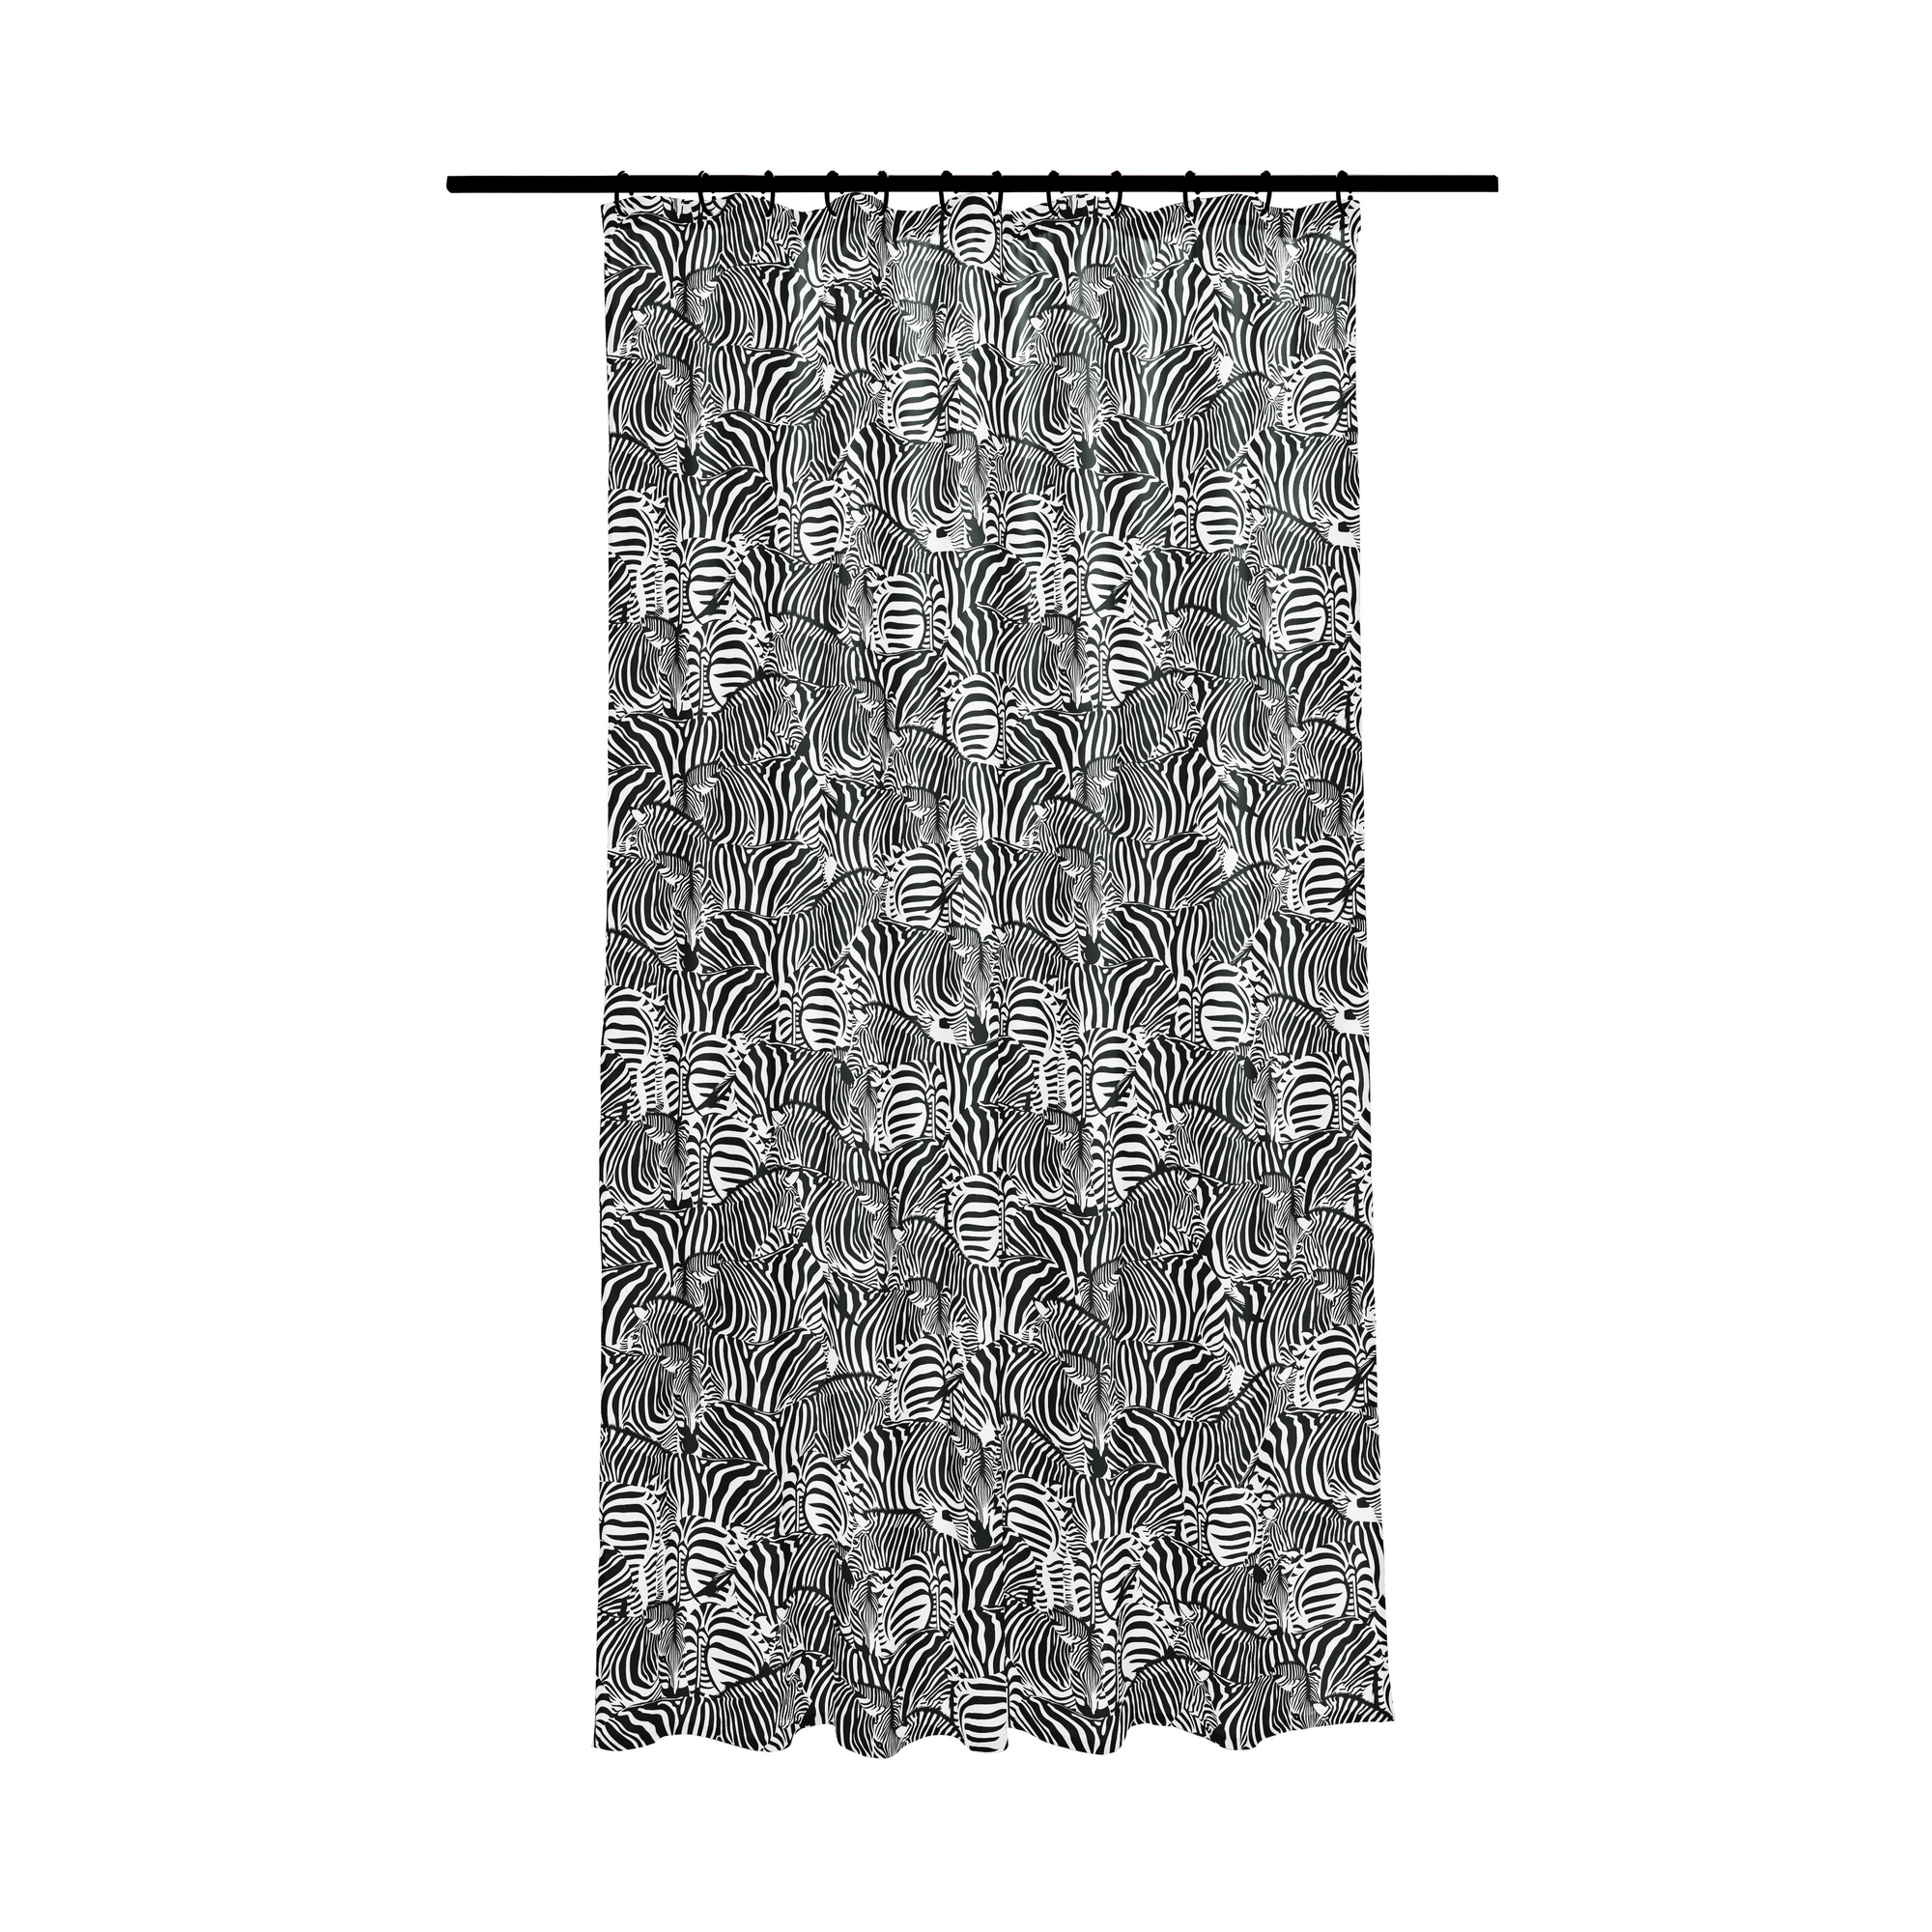 Duschvorhang 'Zebra' Polyester schwarz-weiß 180 x 200 cm + product picture